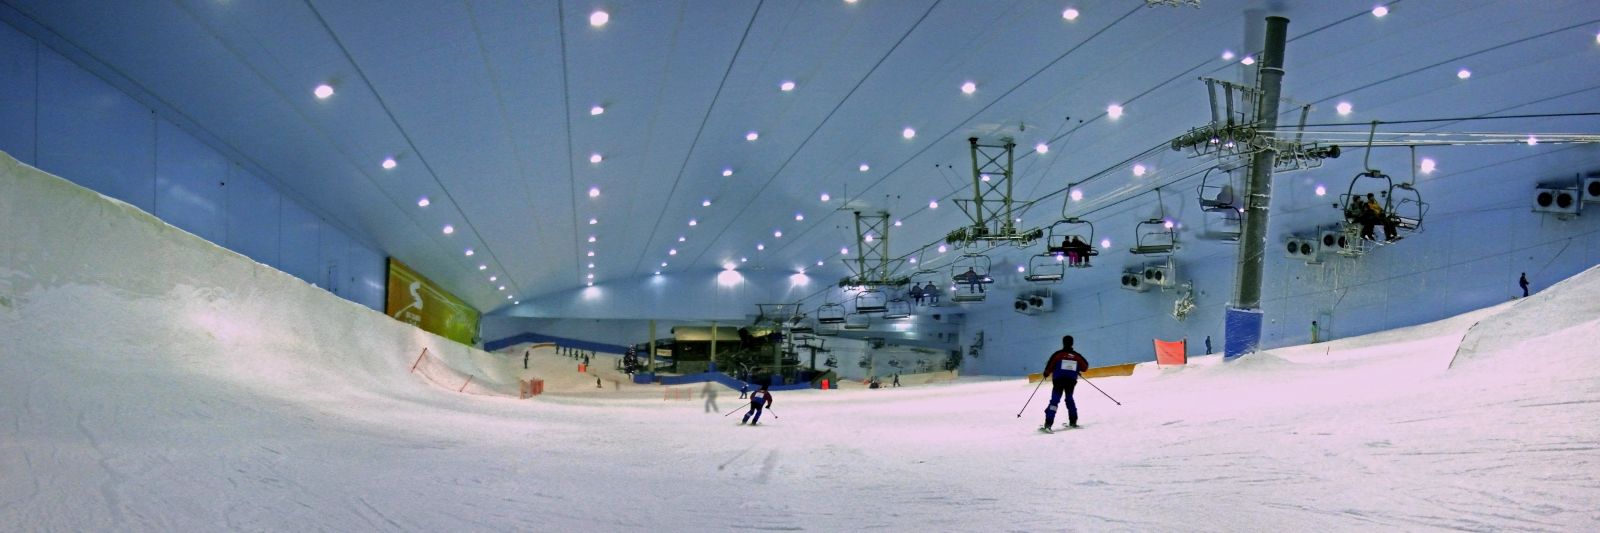 indoor skihallen, indoor skihal